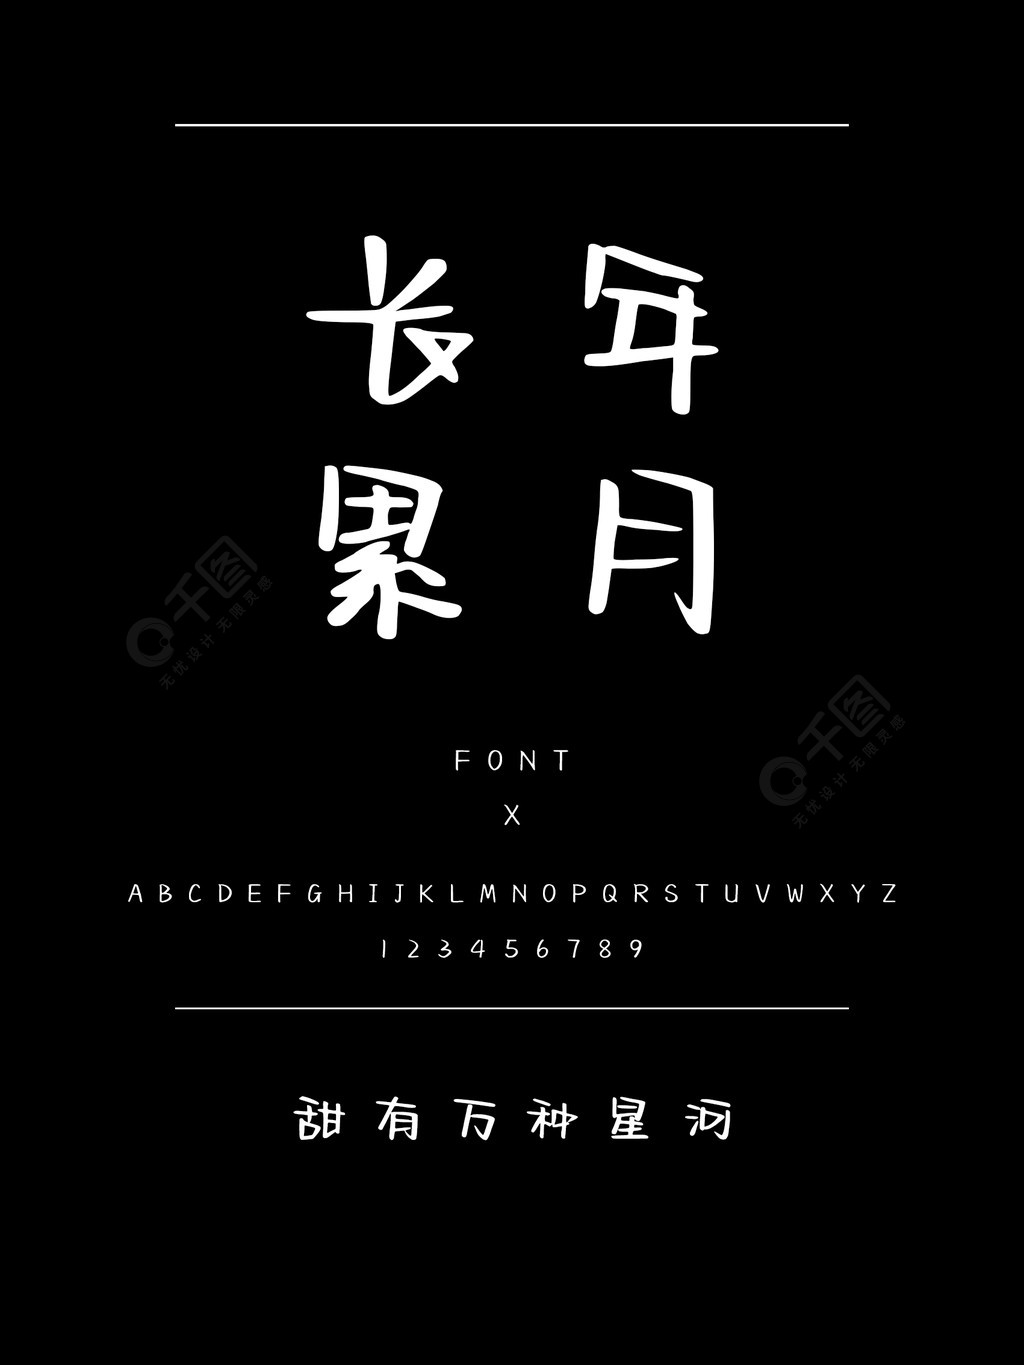 甜有万种星河书法手写简体中文ttf字体下载